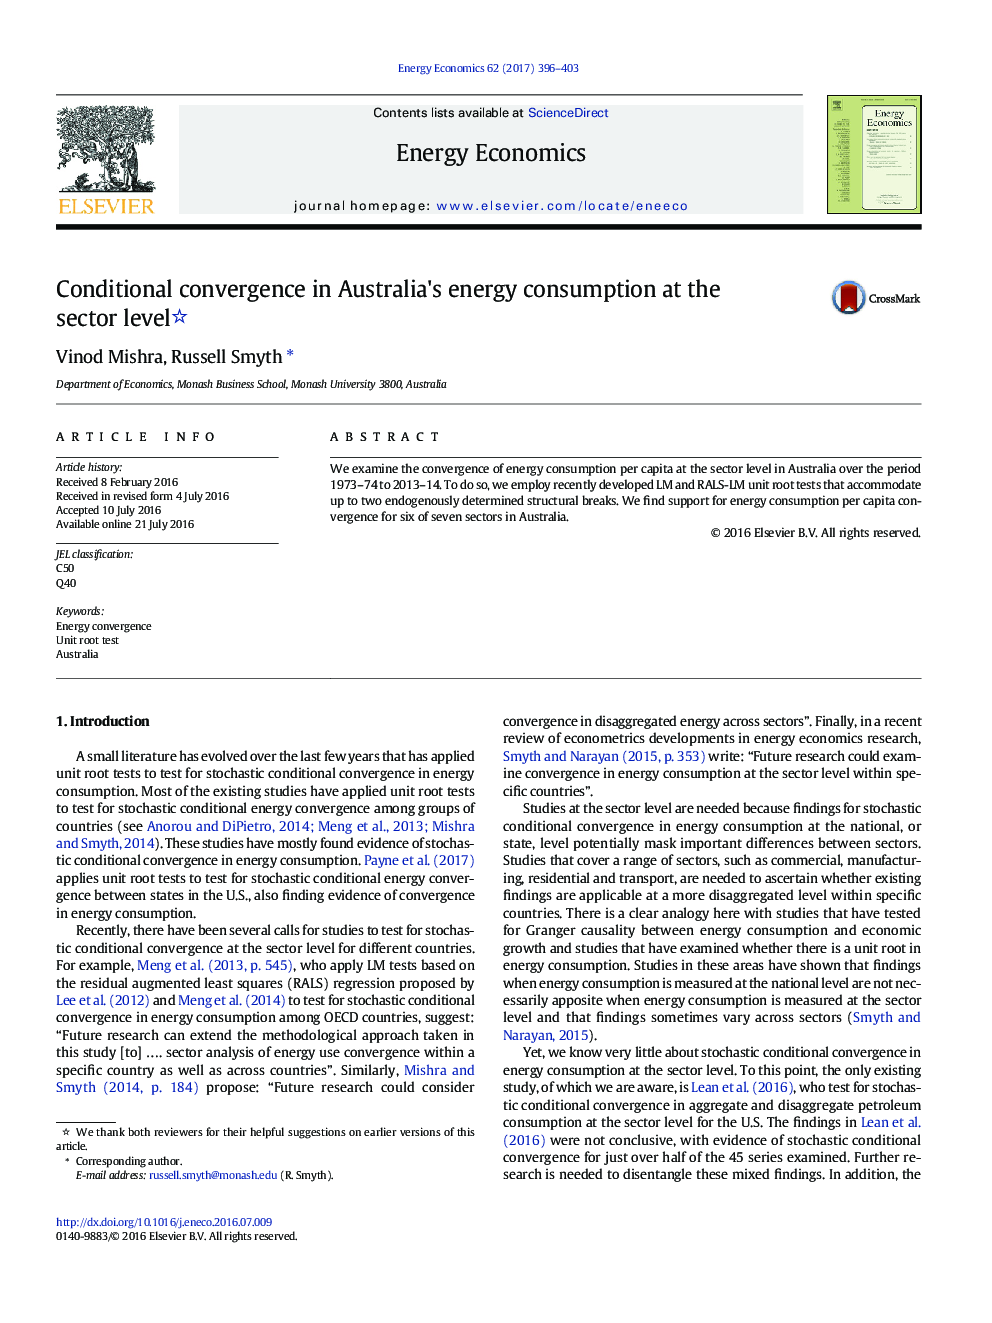 همگرایی محتمل در مصرف انرژی استرالیا در سطح بخش 